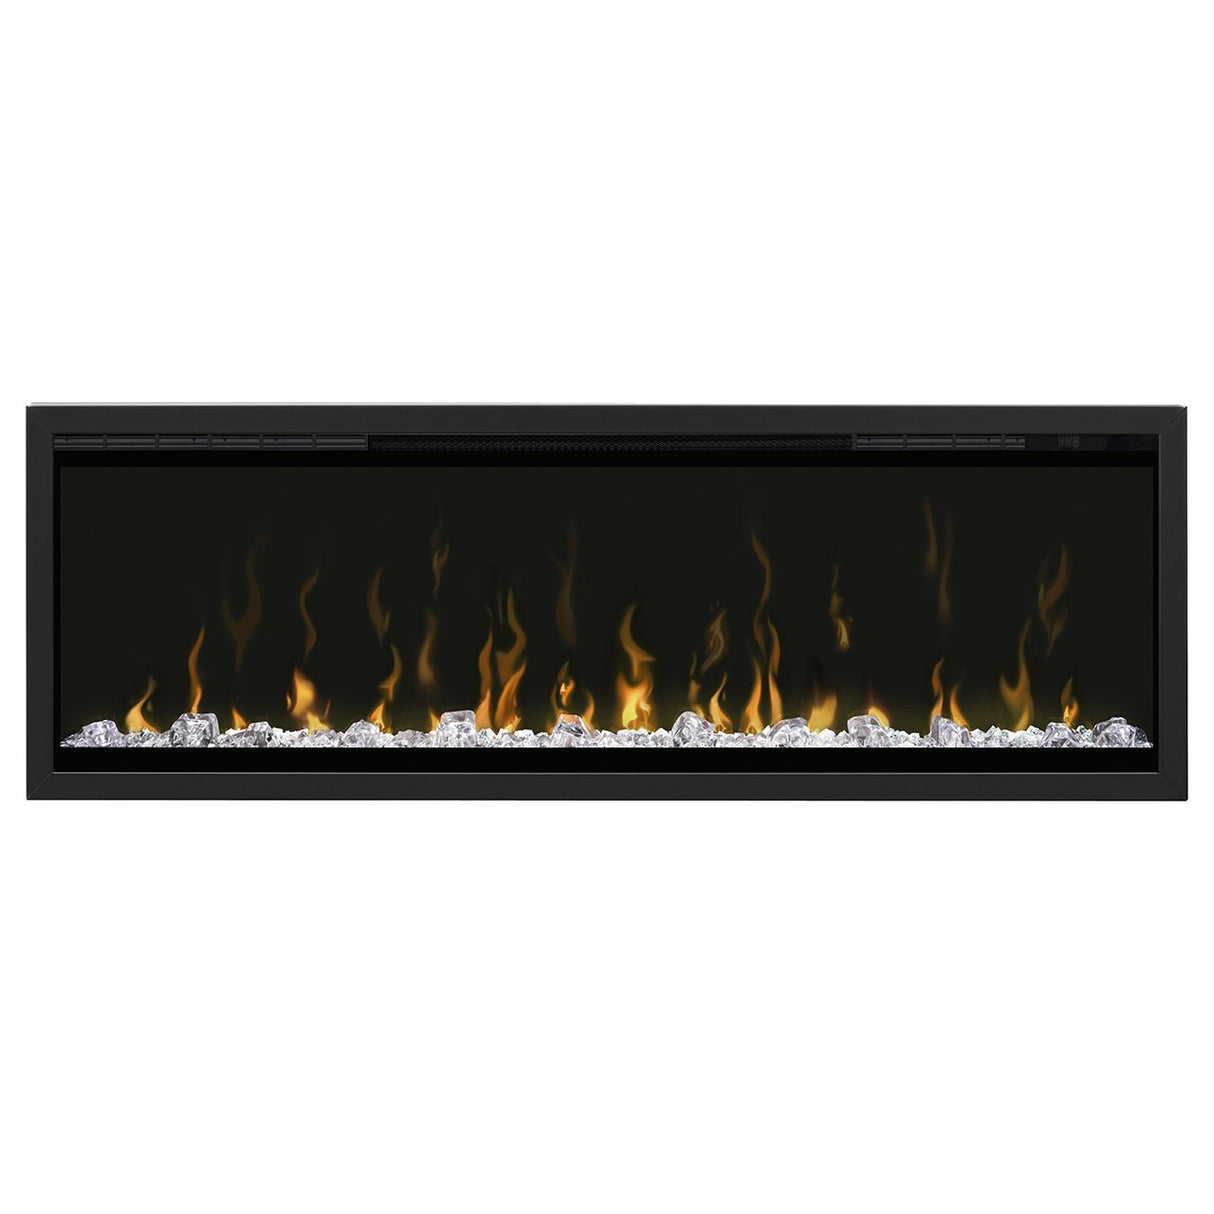 Dimplex 50" IgniteXL Series Built-In Electric Fireplace